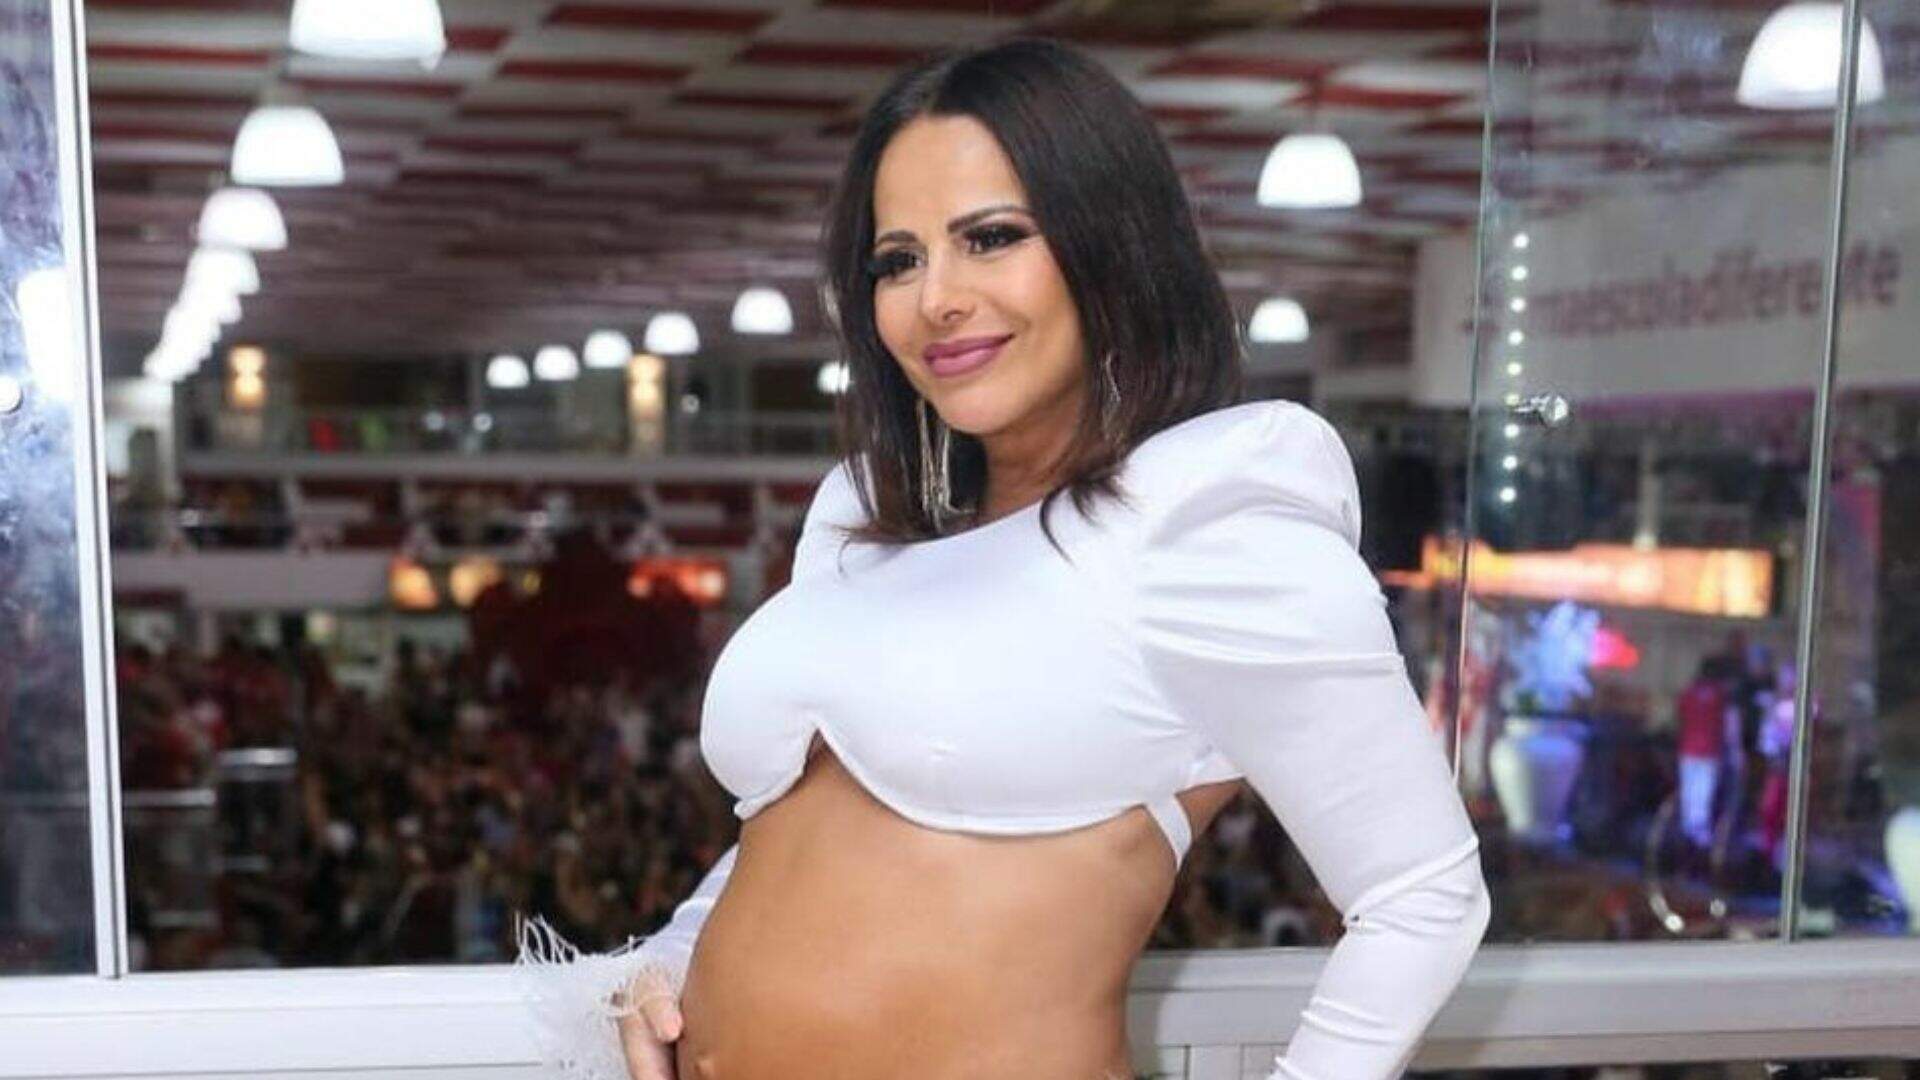 Mamãe fitness! Viviane Araújo posta vídeo malhando na reta final da gestação - Metropolitana FM